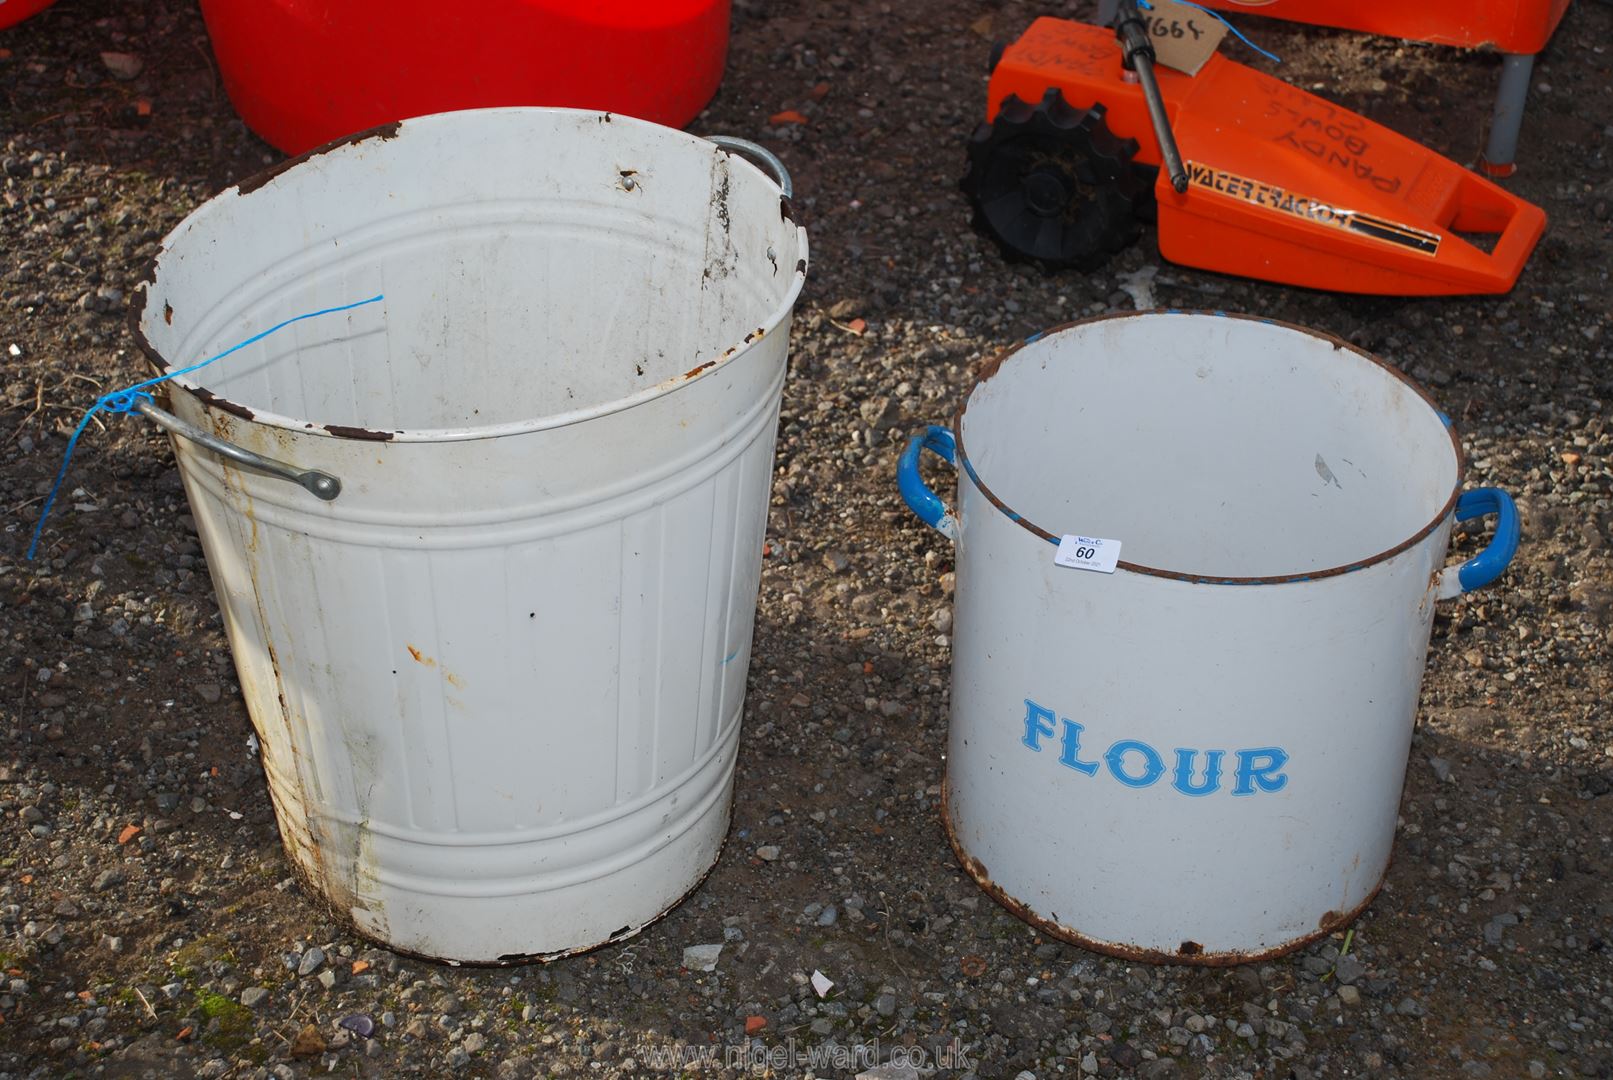 Enamel flour bin and painted dustbin.